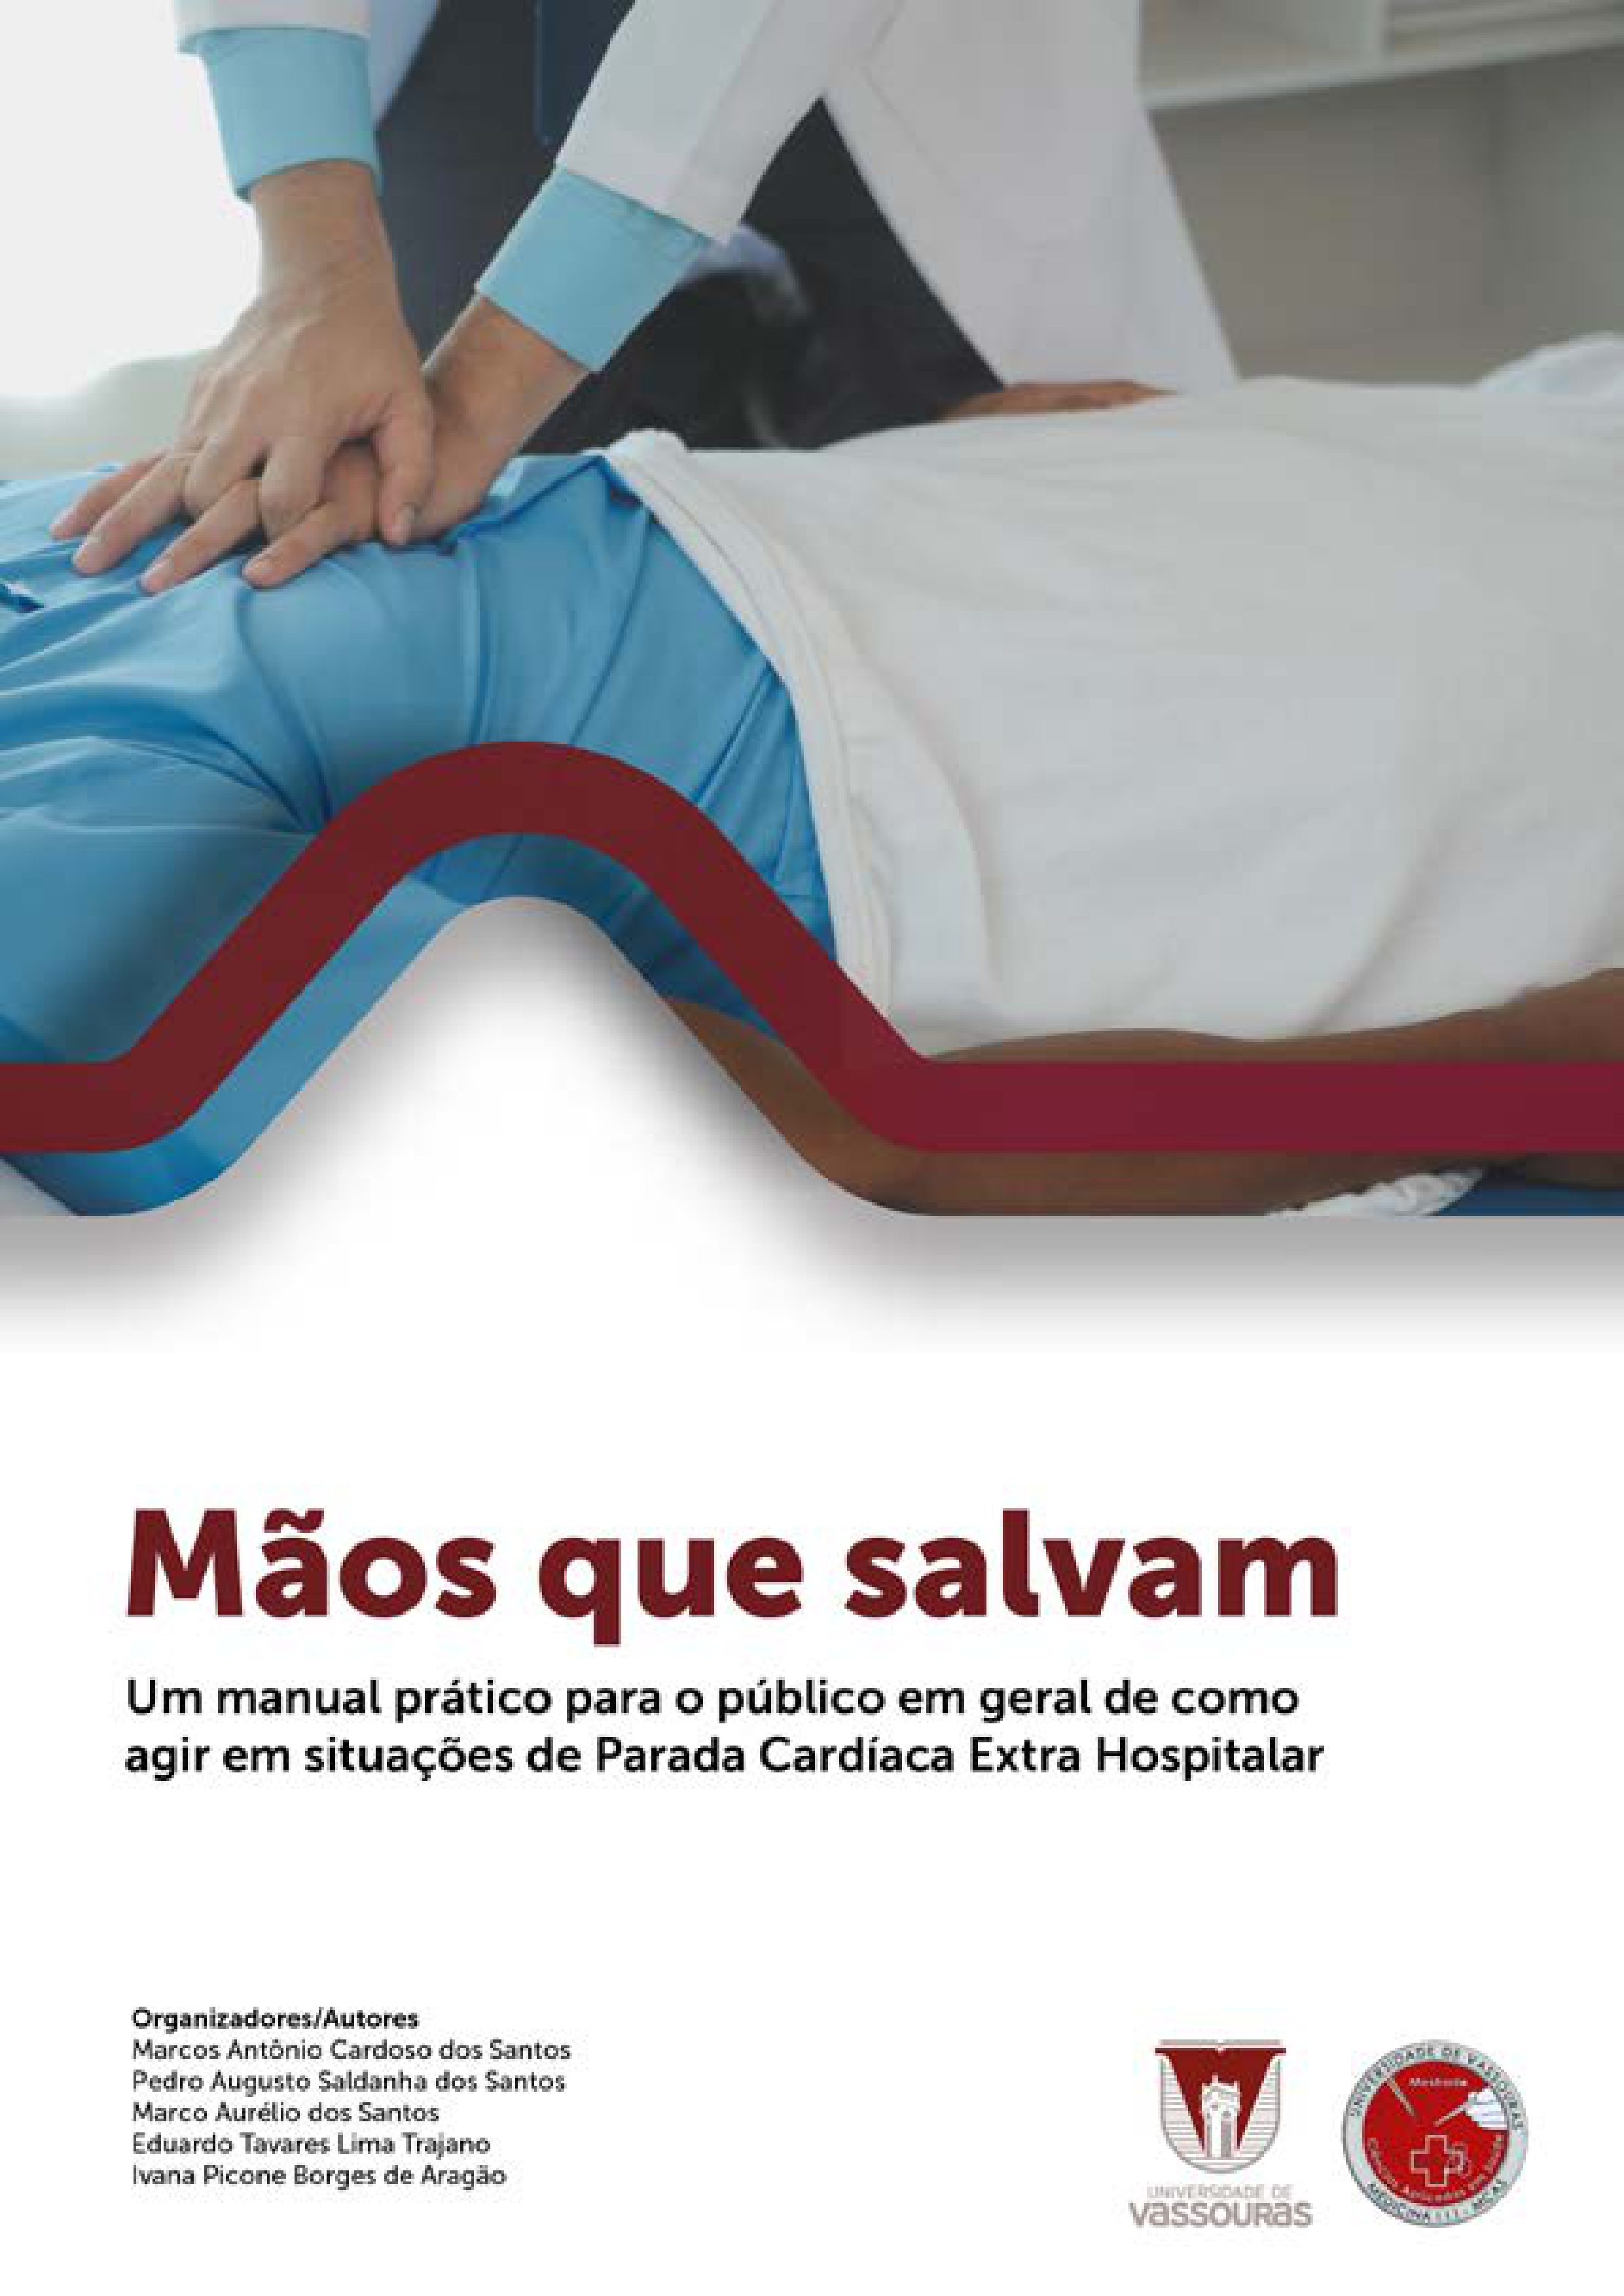 					View 2024: Mãos que salvam: Um manual prático para o público em geral de como agir em situações de Parada Cardíaca Extra Hospitalar
				